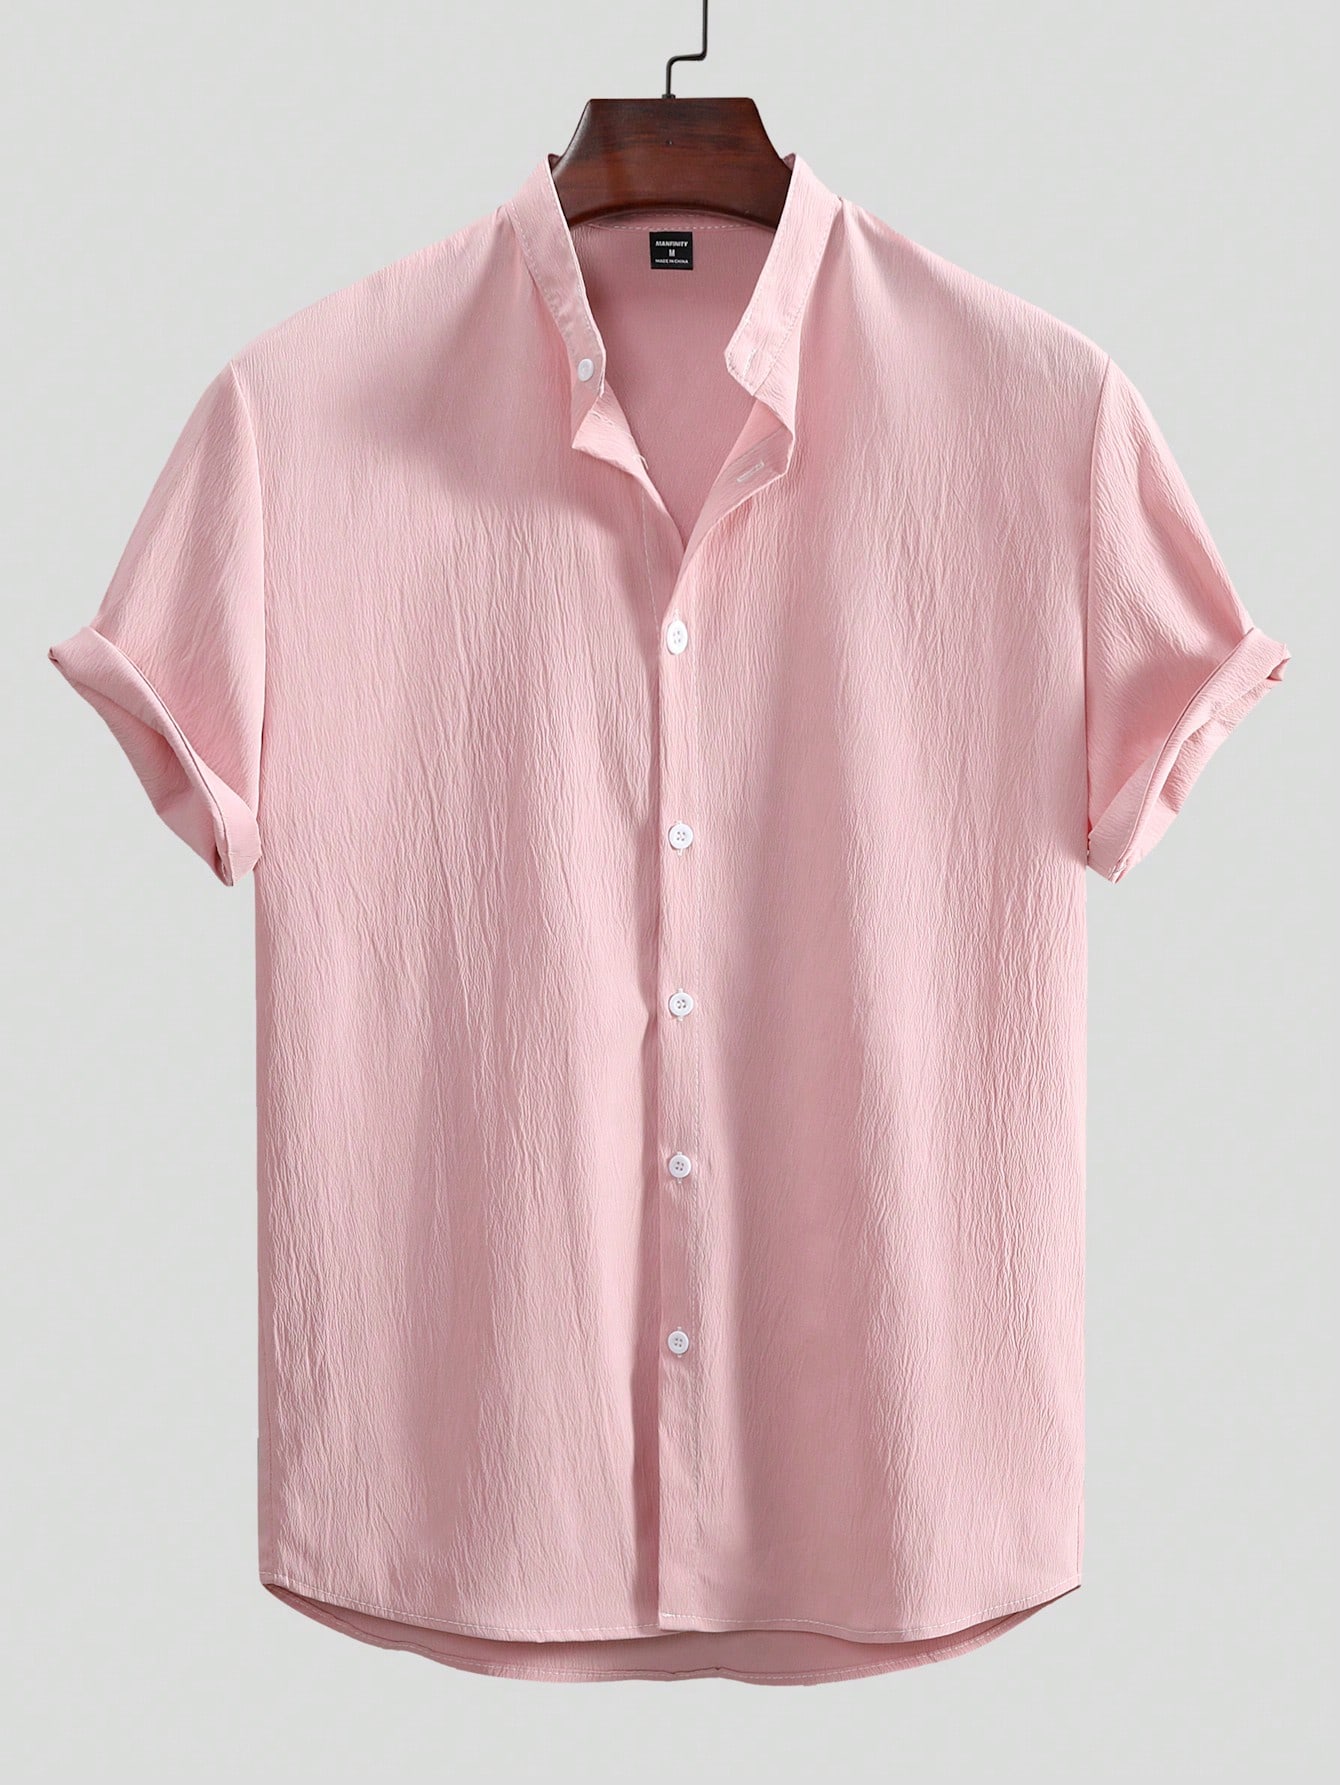 Мужская текстурированная рубашка с коротким рукавом Manfinity Homme на пуговицах спереди, розовый цена и фото